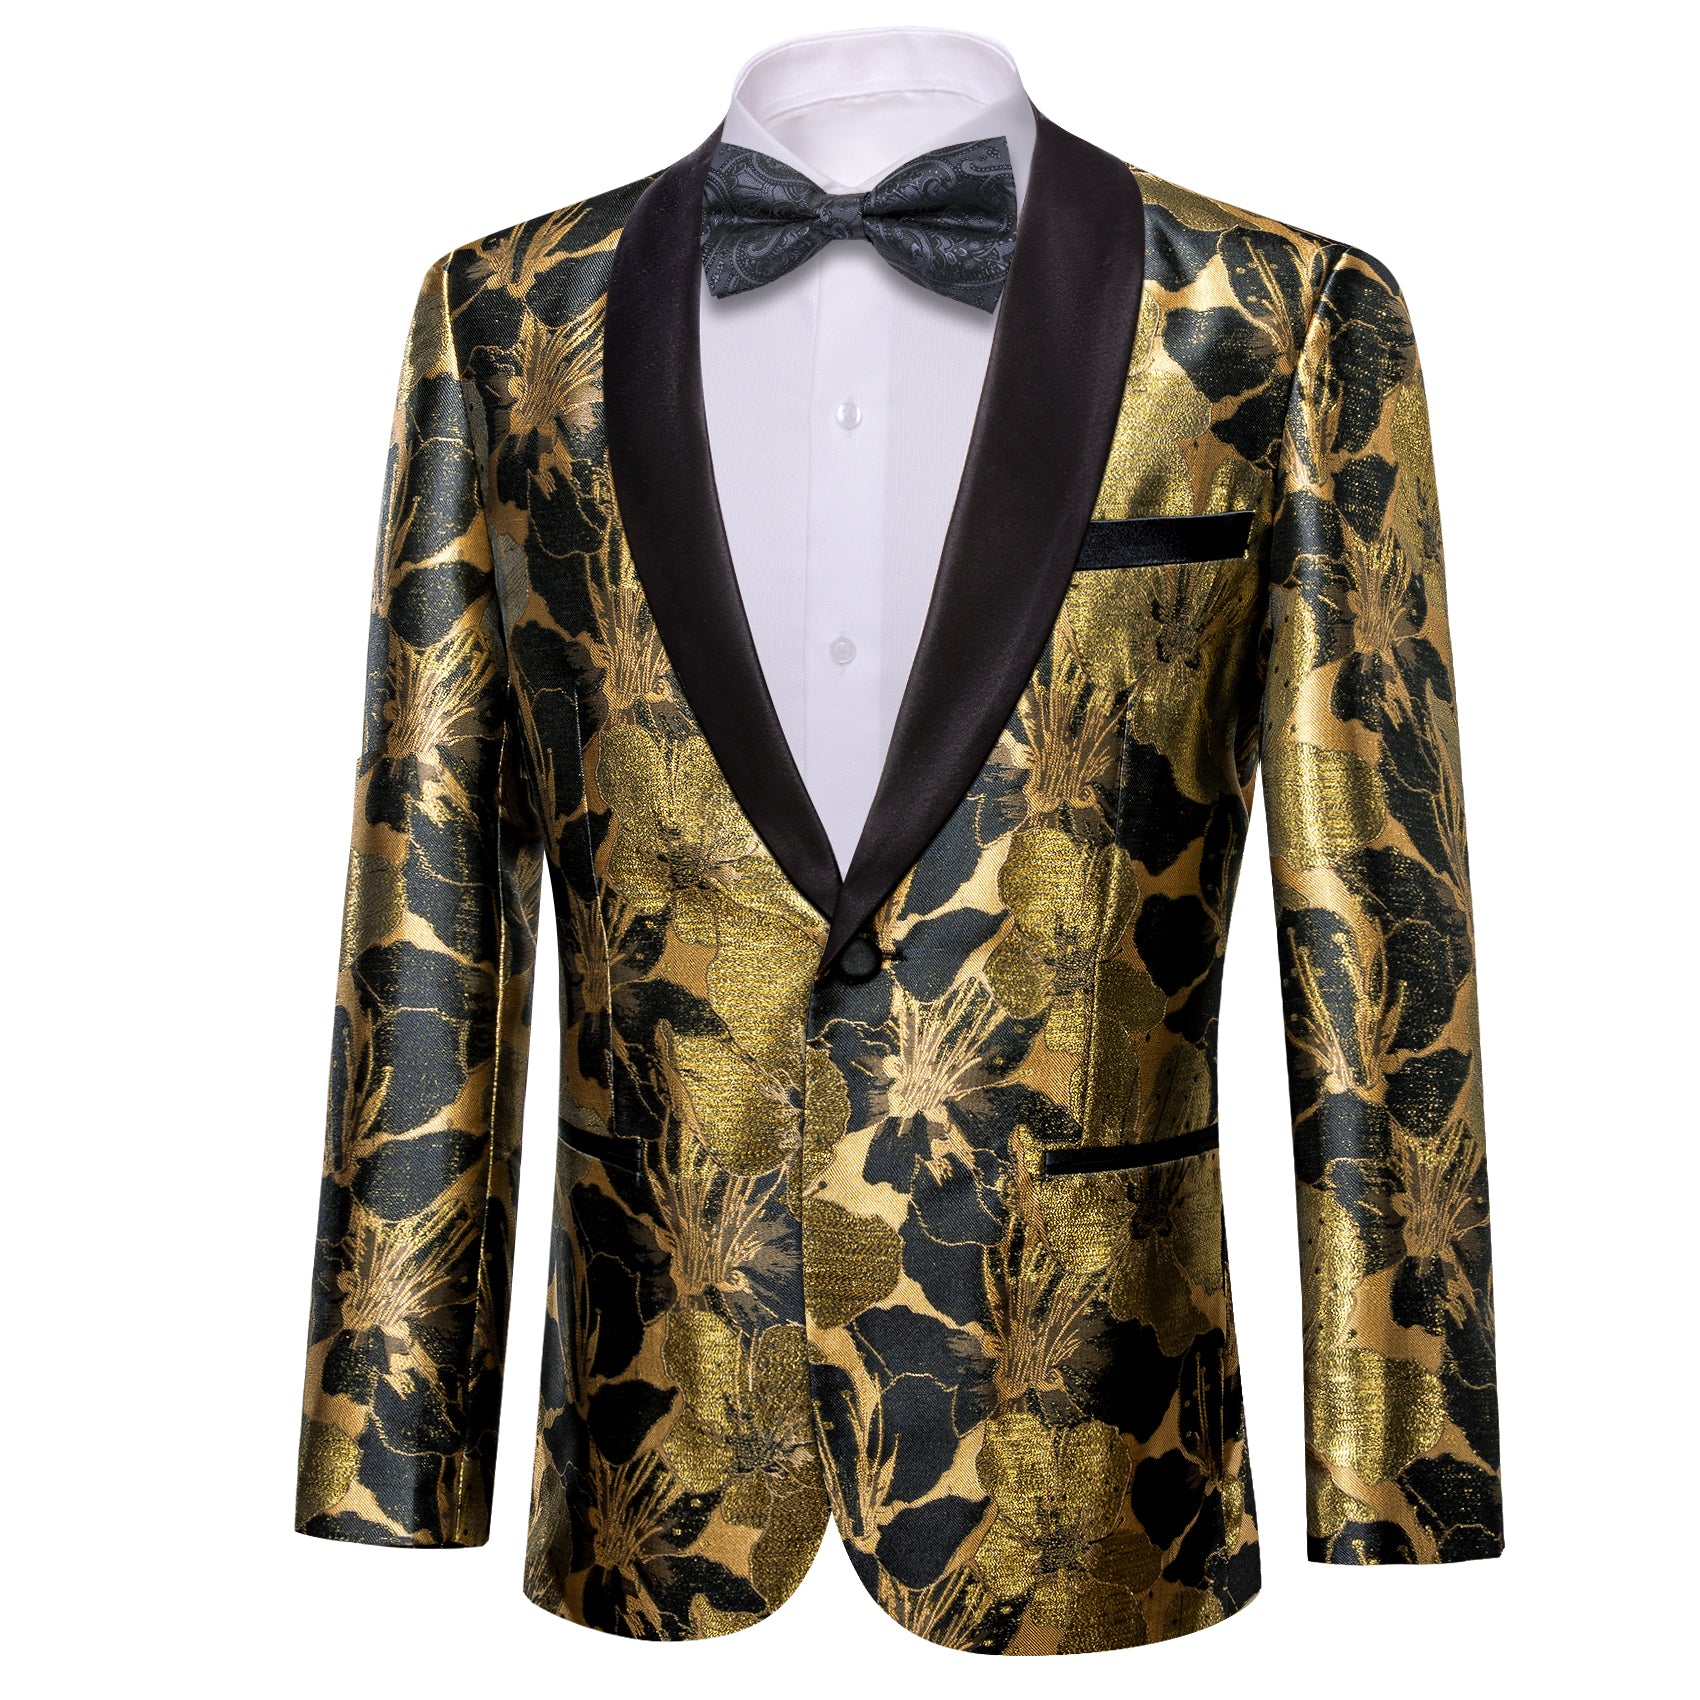 Men's Dress Party Gold Black Floral Suit Jacket Slim One Button Stylish Blazer